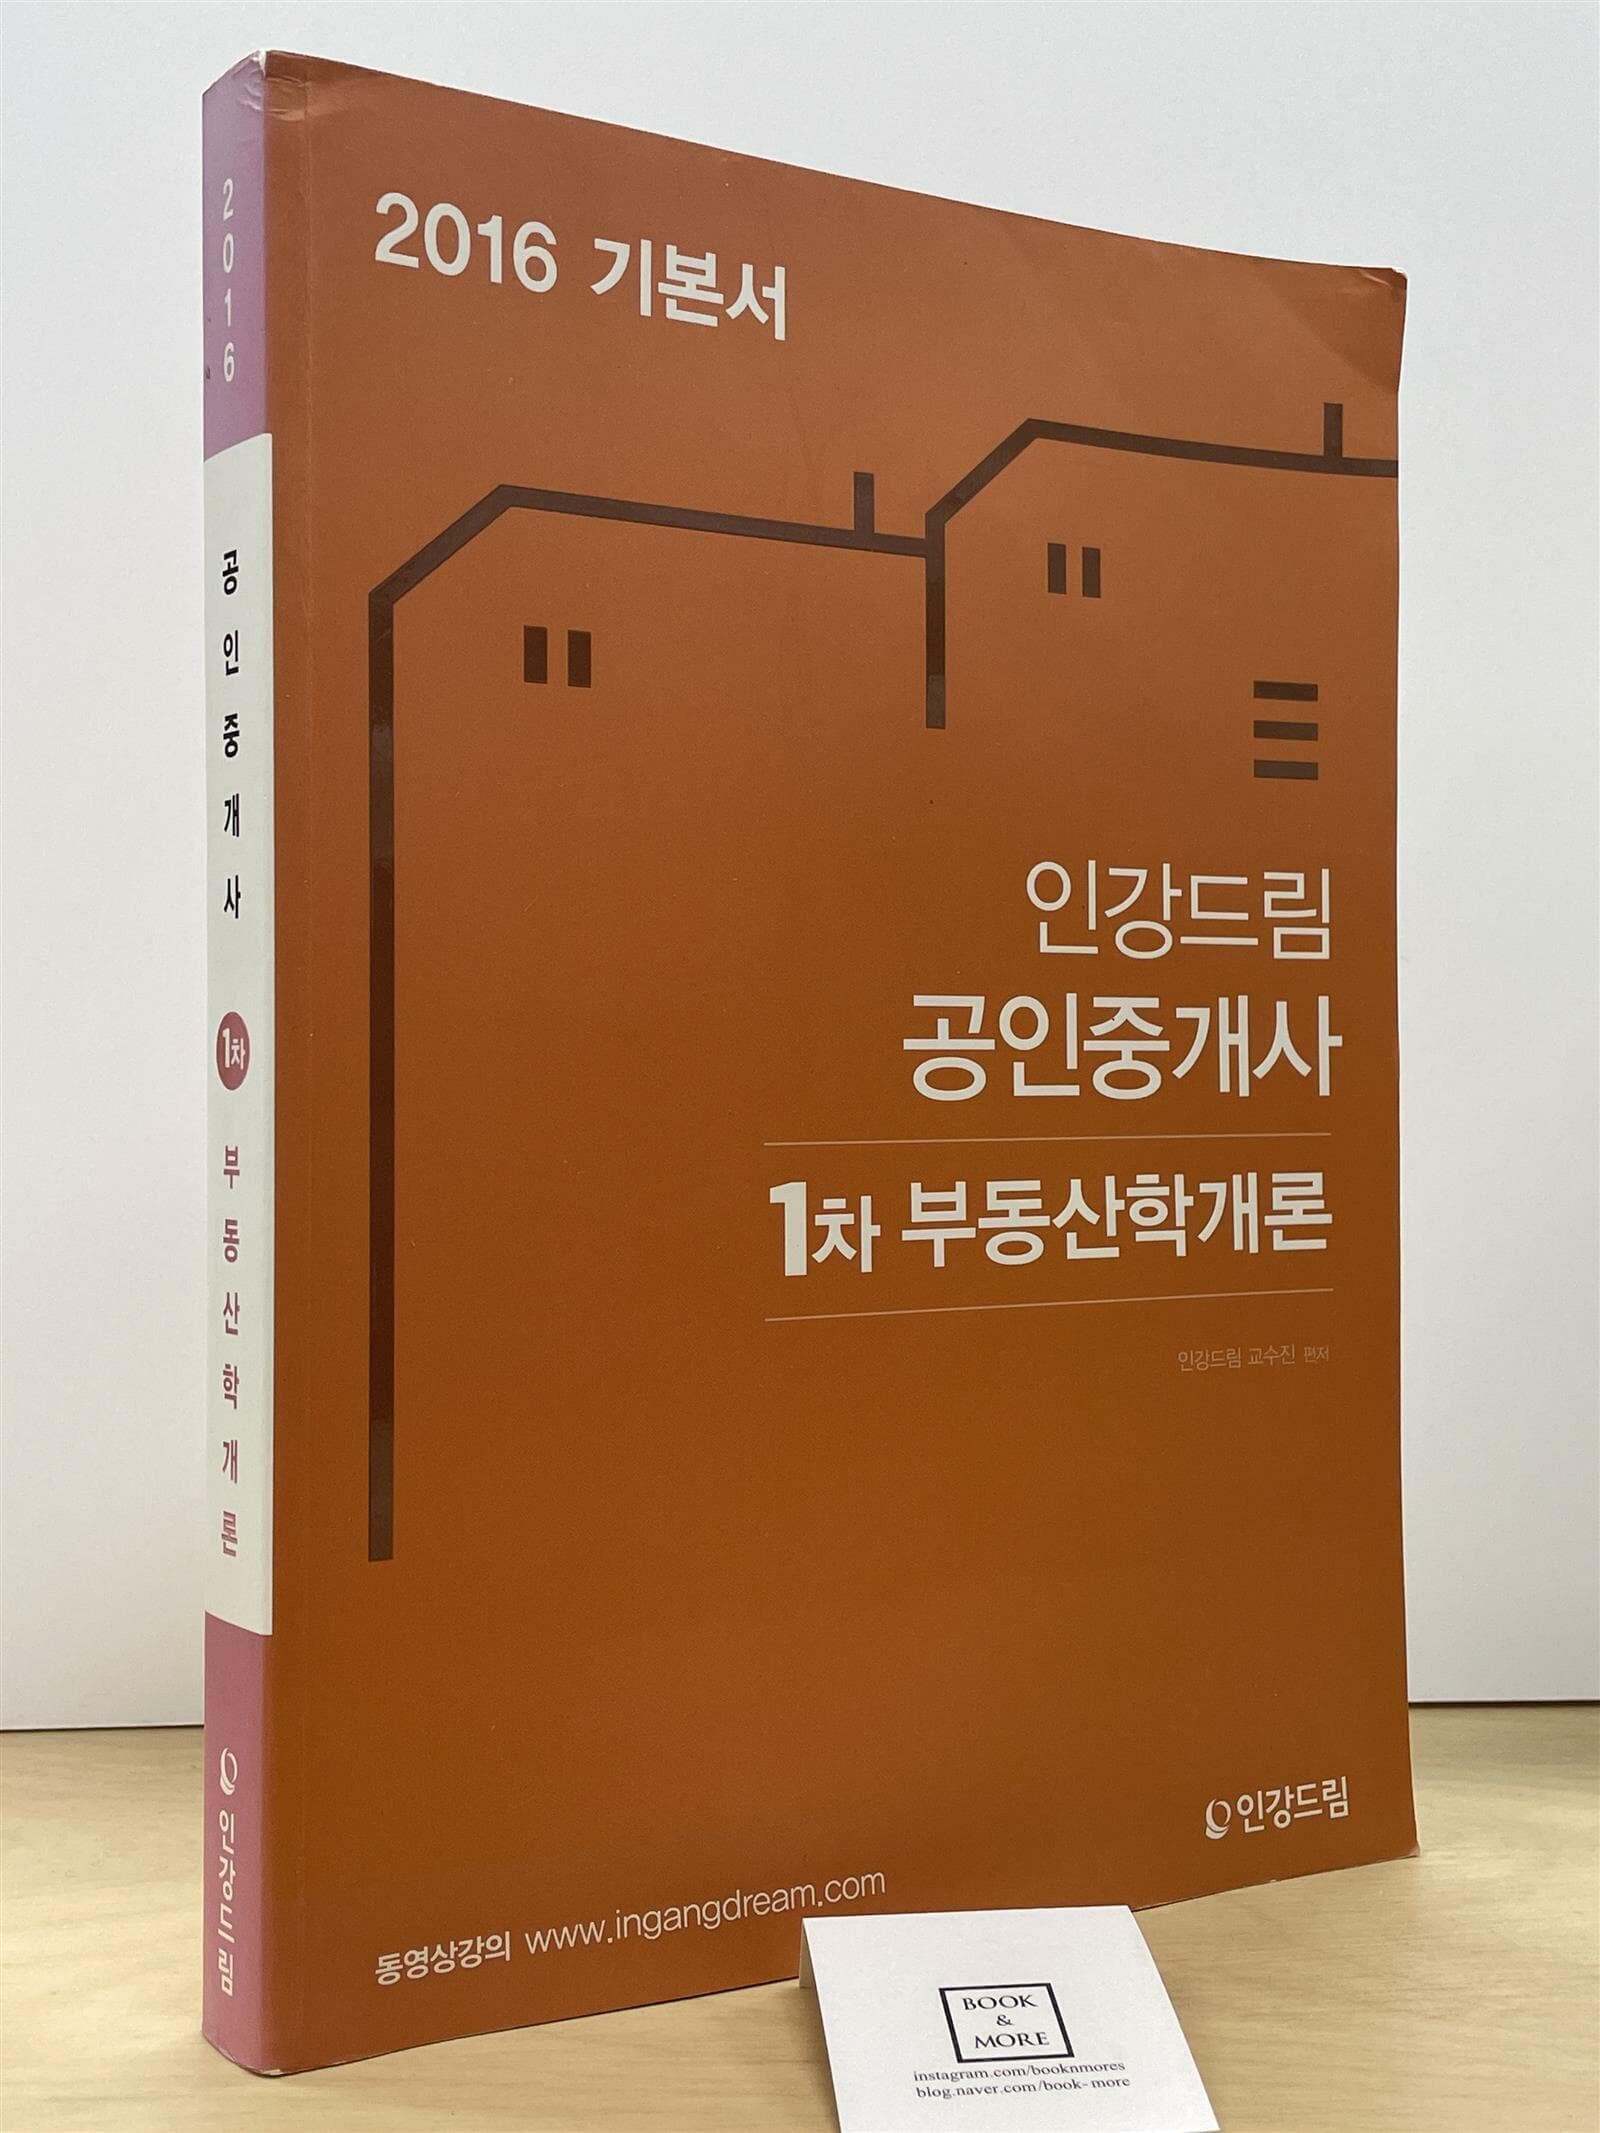 2016 인강드림 공인중개사 1차 부동산학개론 기본서  --  상태 : 중급